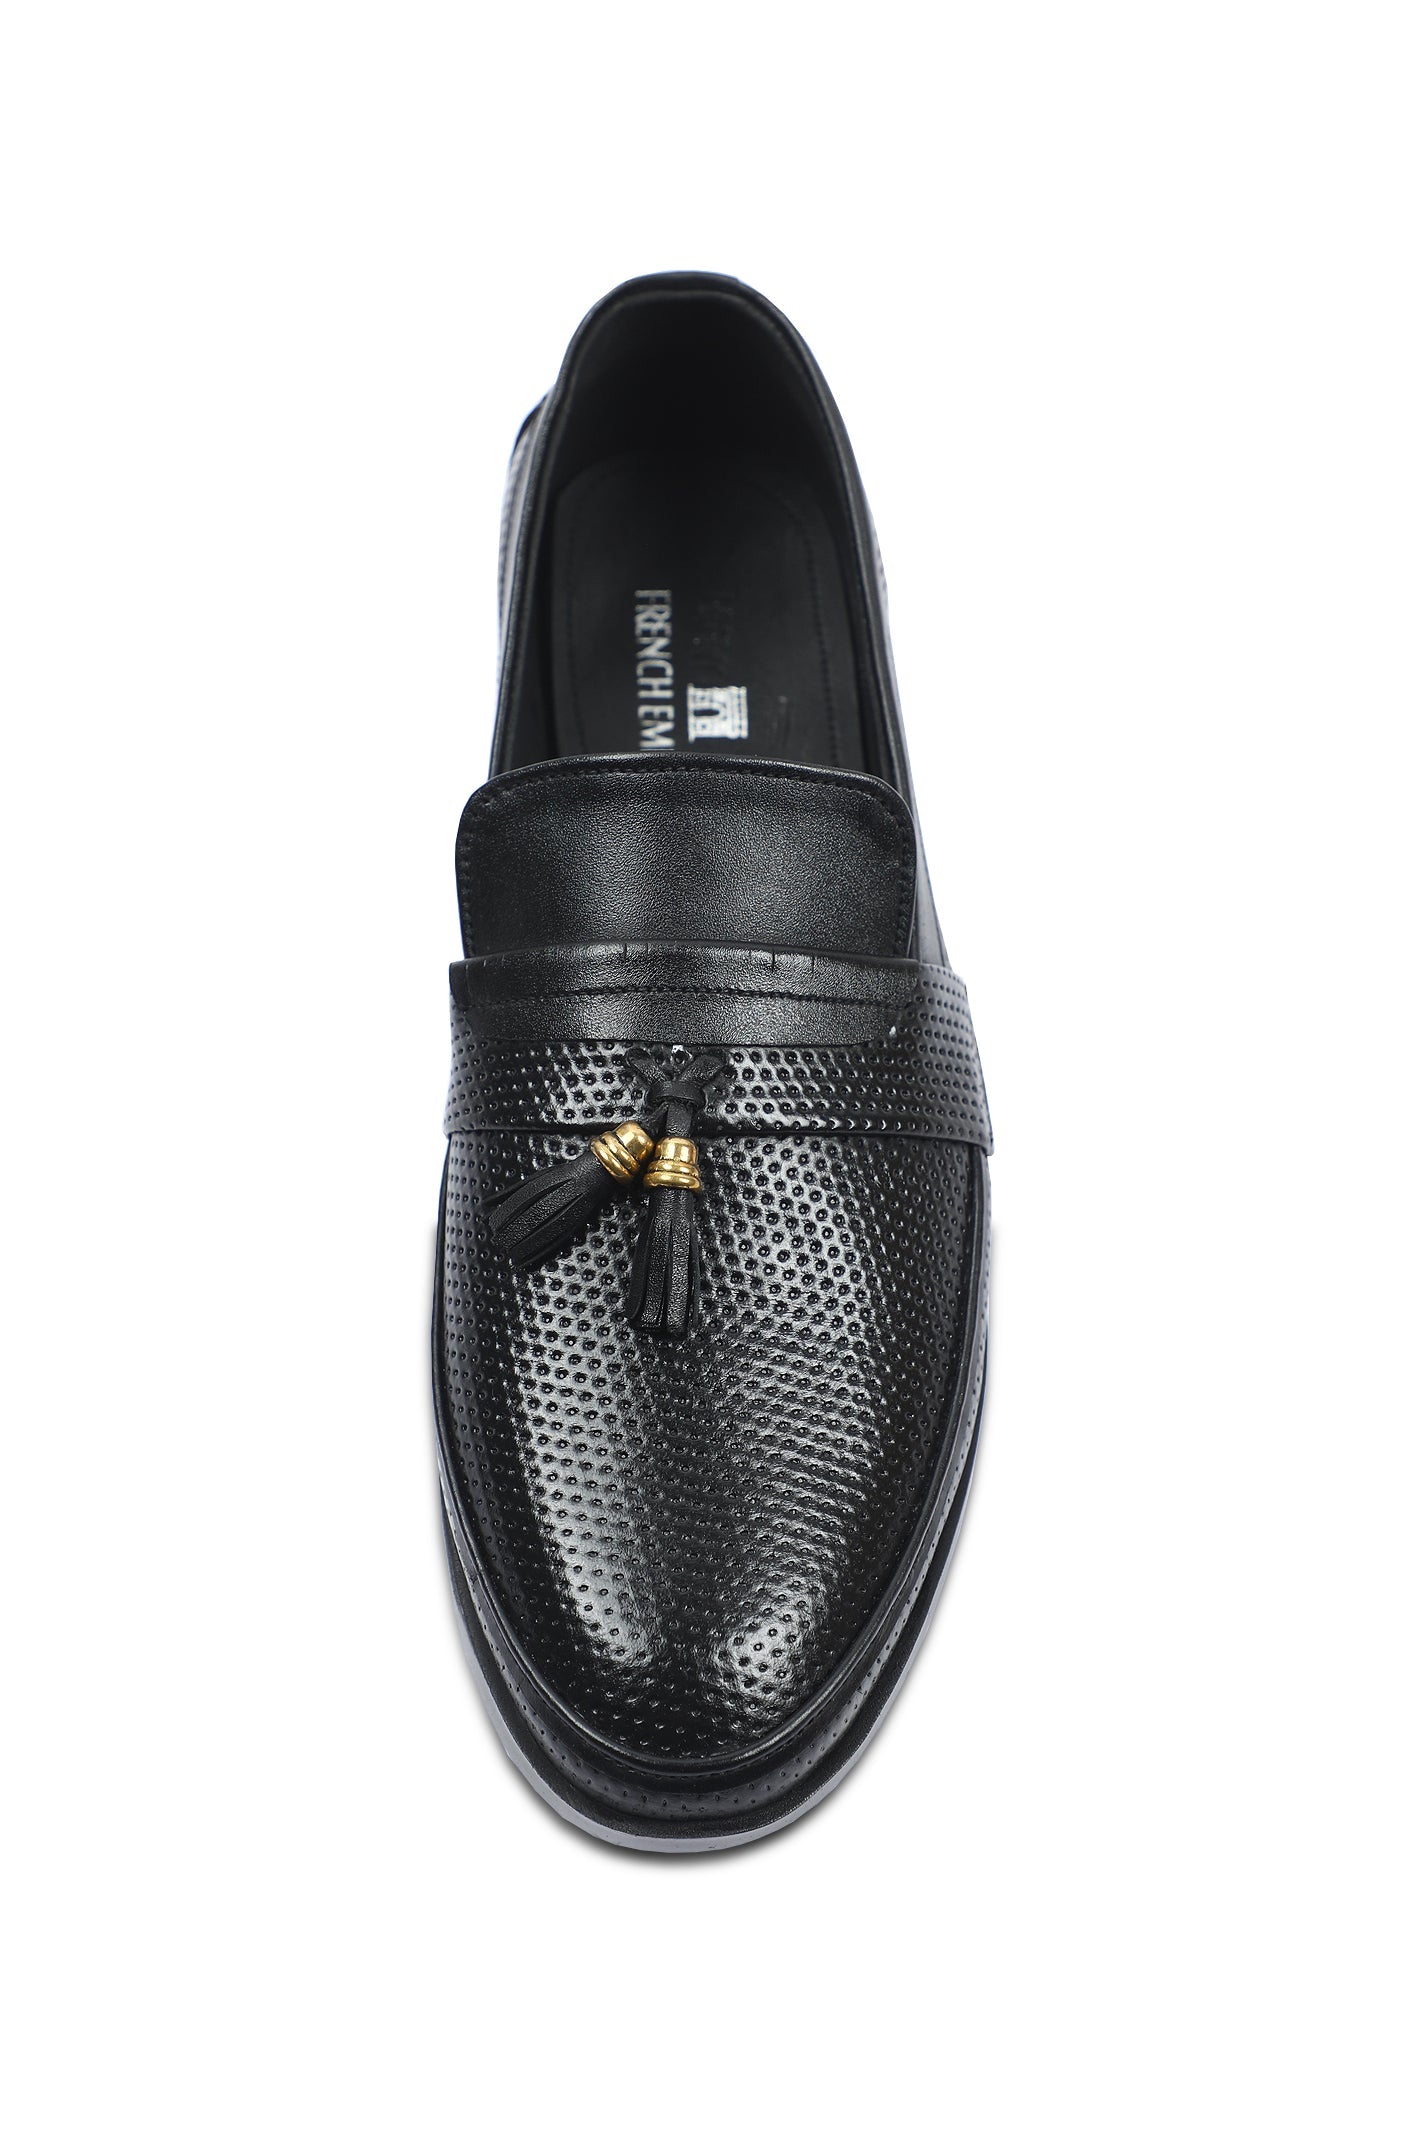 Formal Shoes For Men in Black SKU: SMF-0209-BLACK - Diners